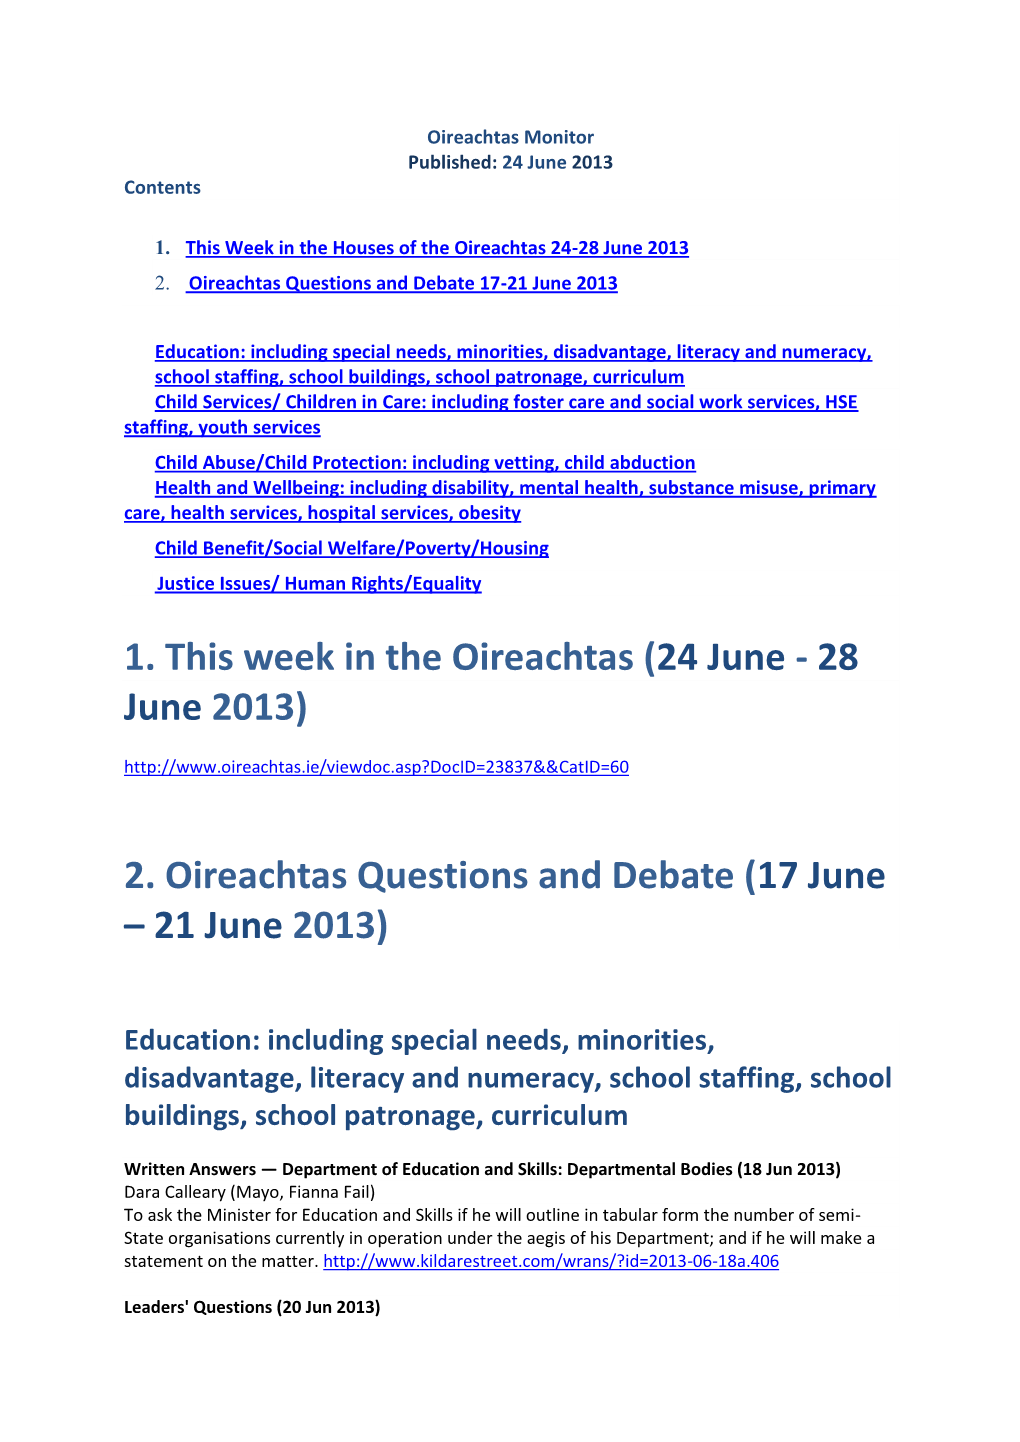 1. This Week in the Oireachtas (24 June - 28 June 2013)